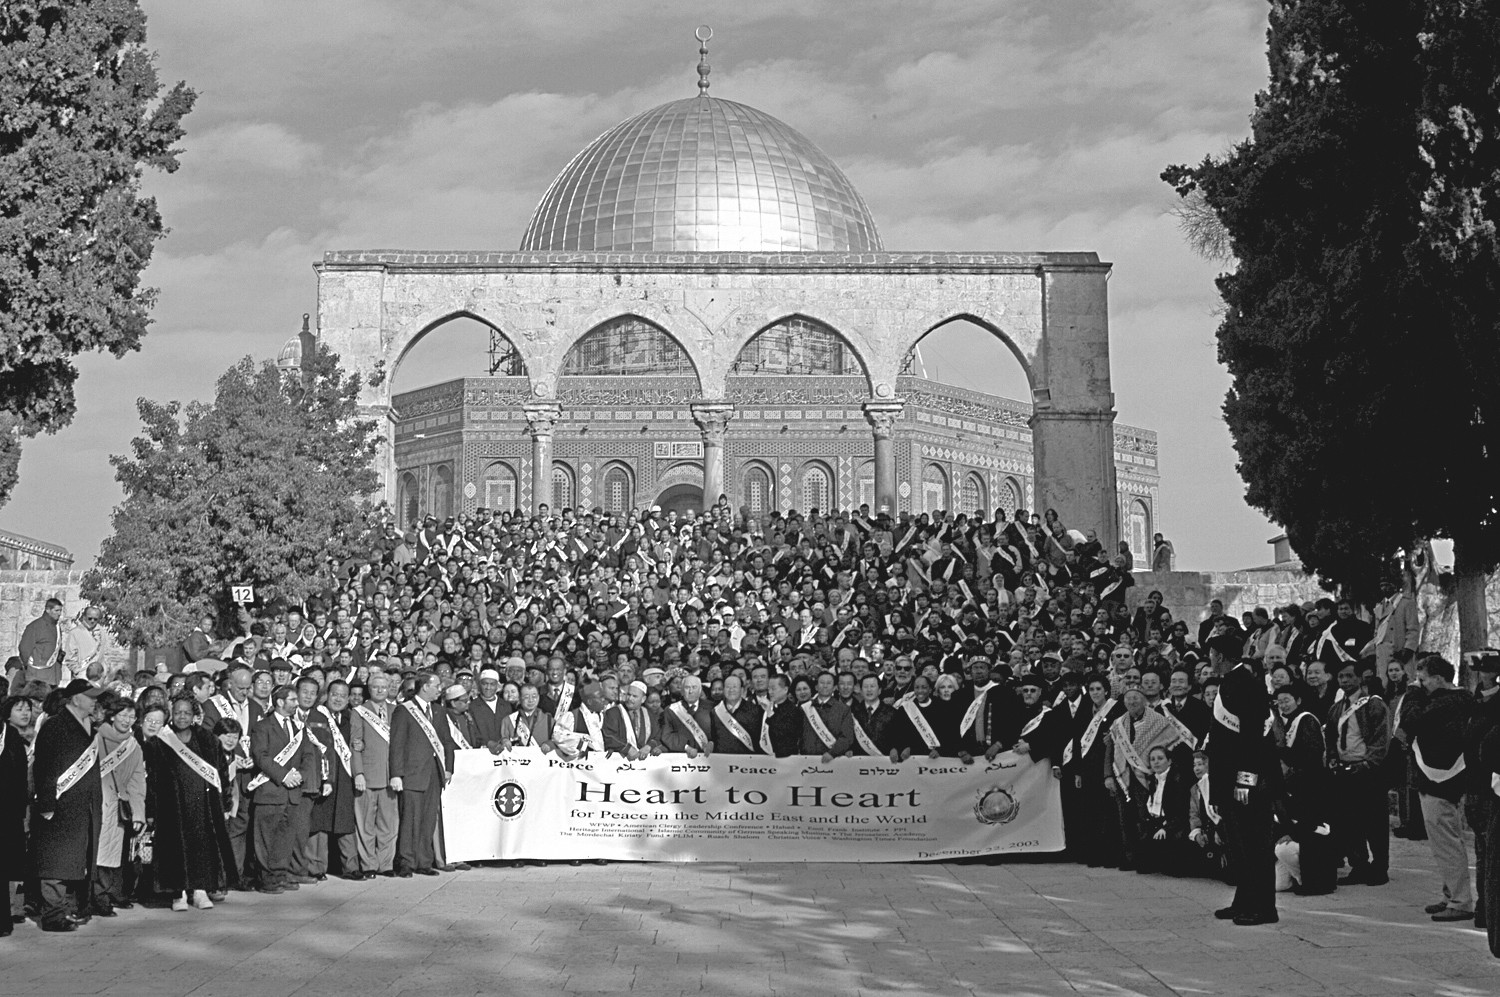 22 грудня 2003 року релігійні лідери мирної ініціативи на Близькому Сході зібралися перед Куполом Скелі в Єрусалимі